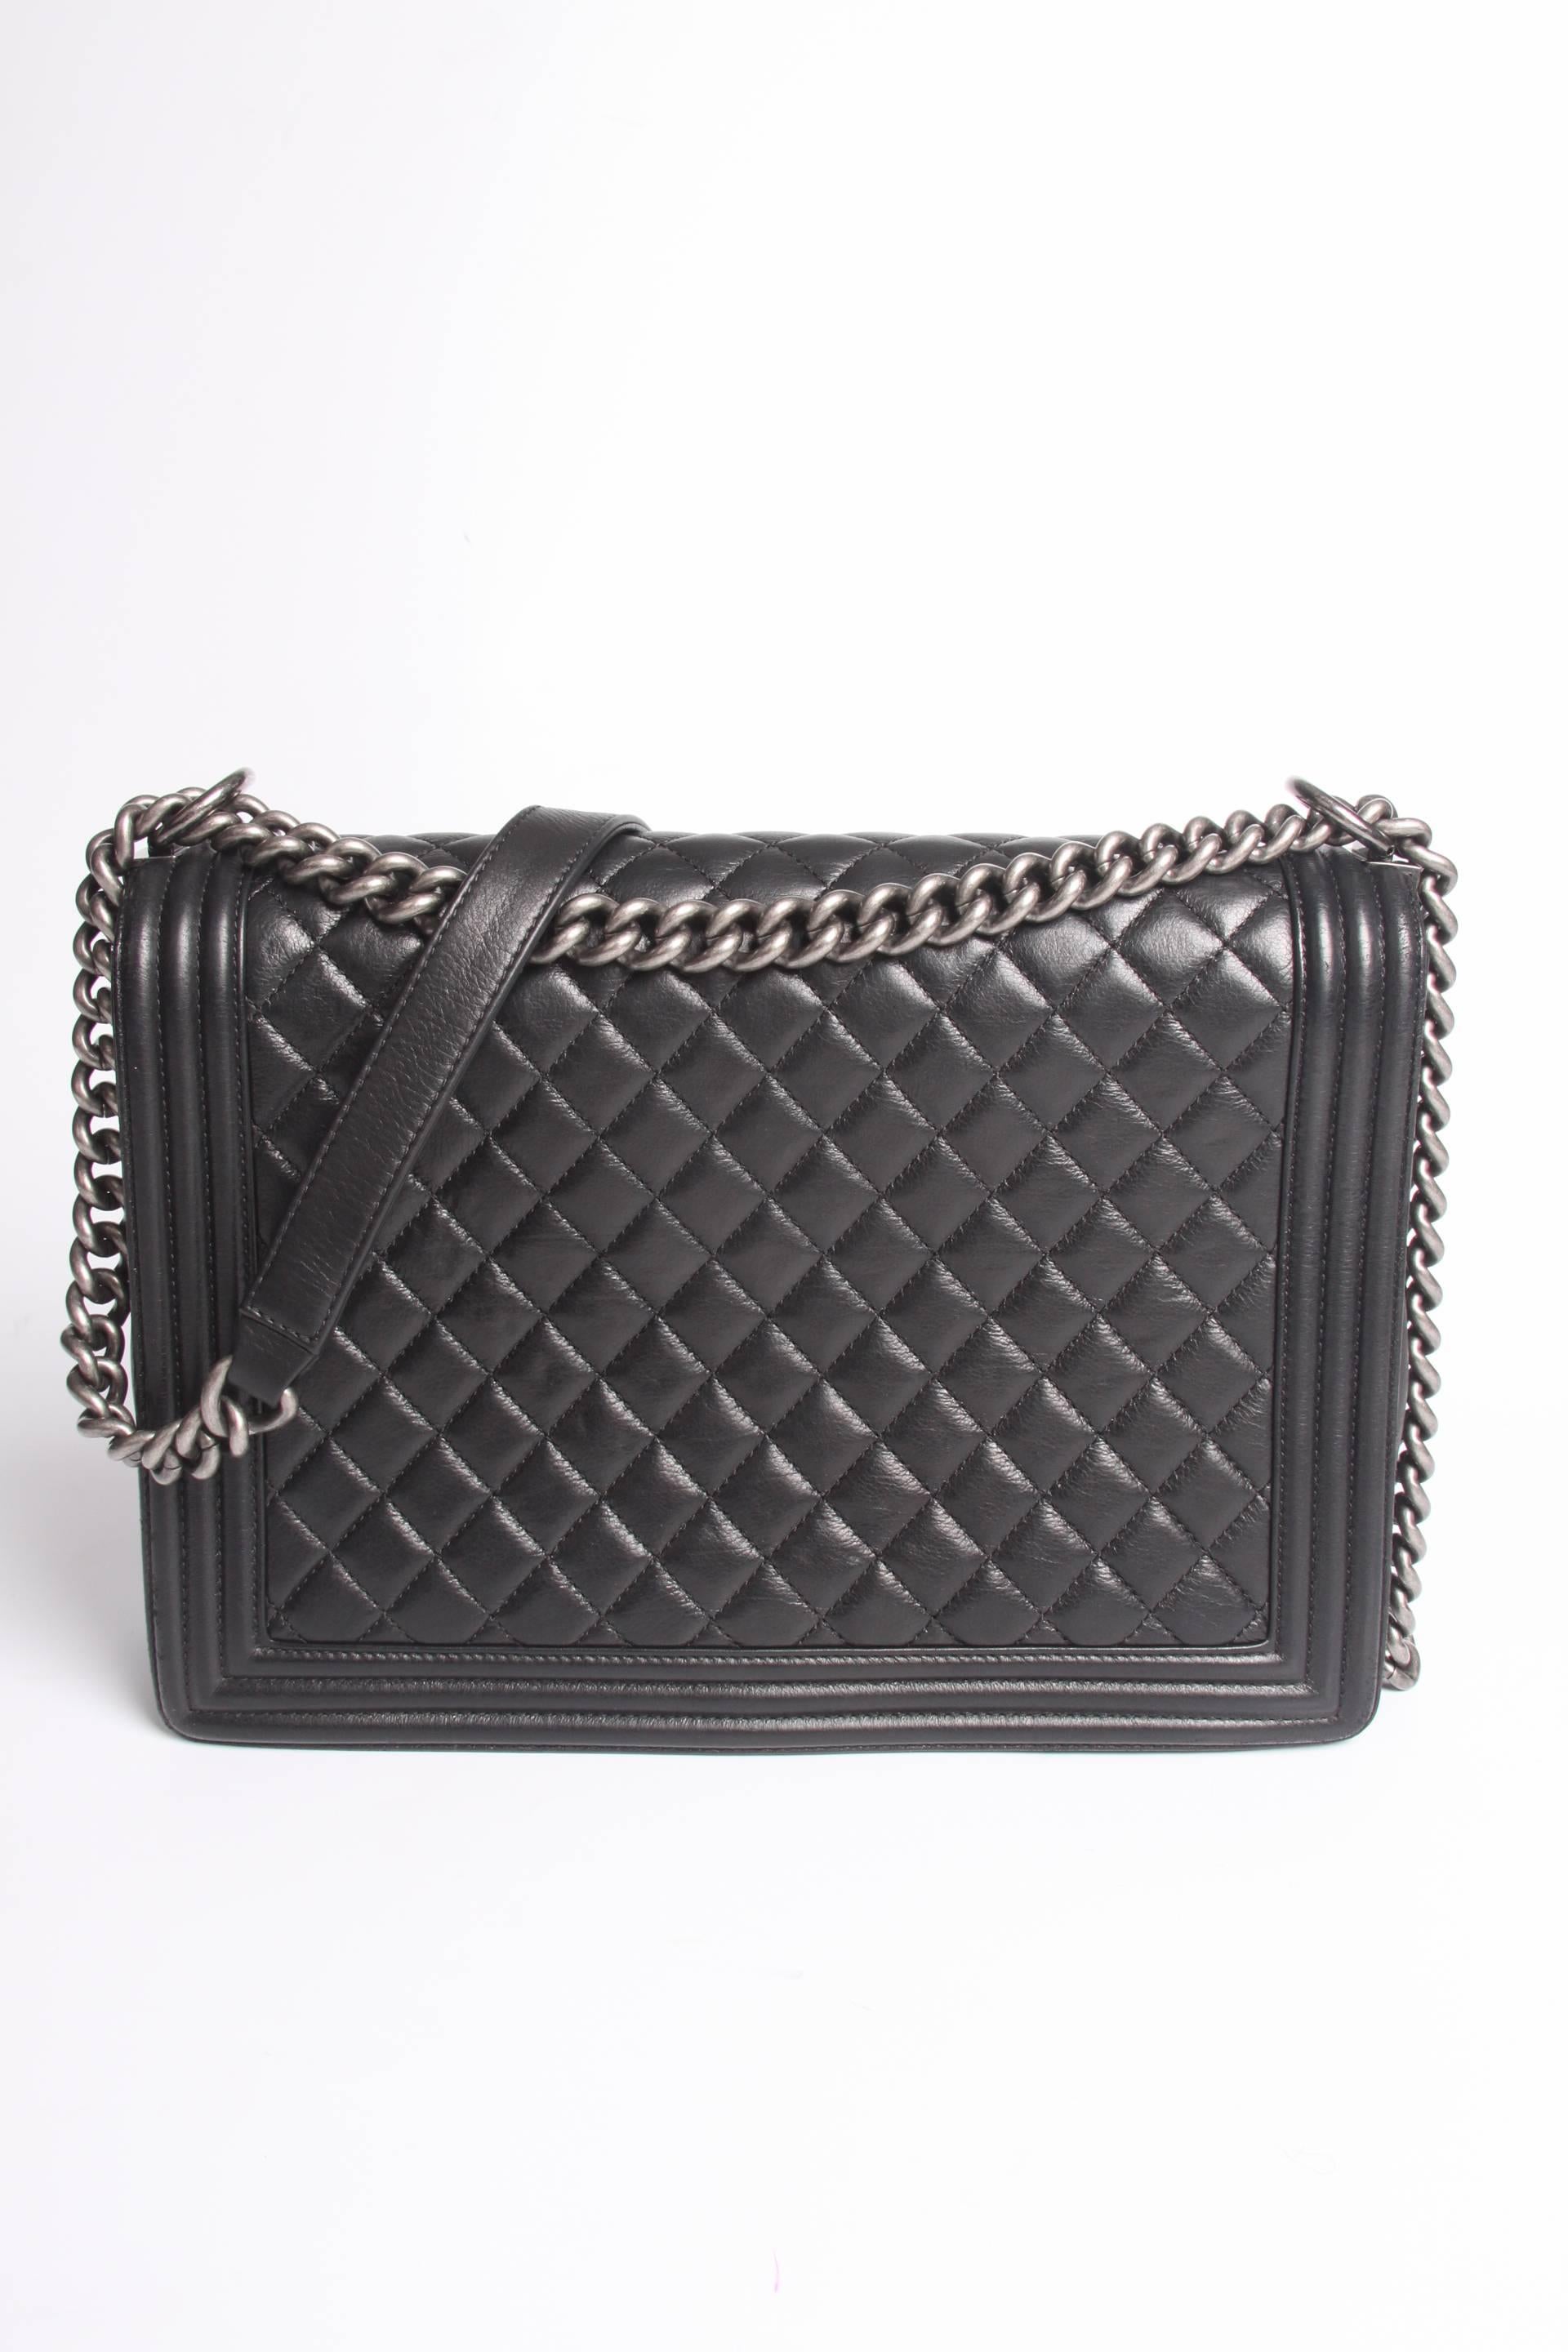 Black Chanel Boy Bag Large - black leather 